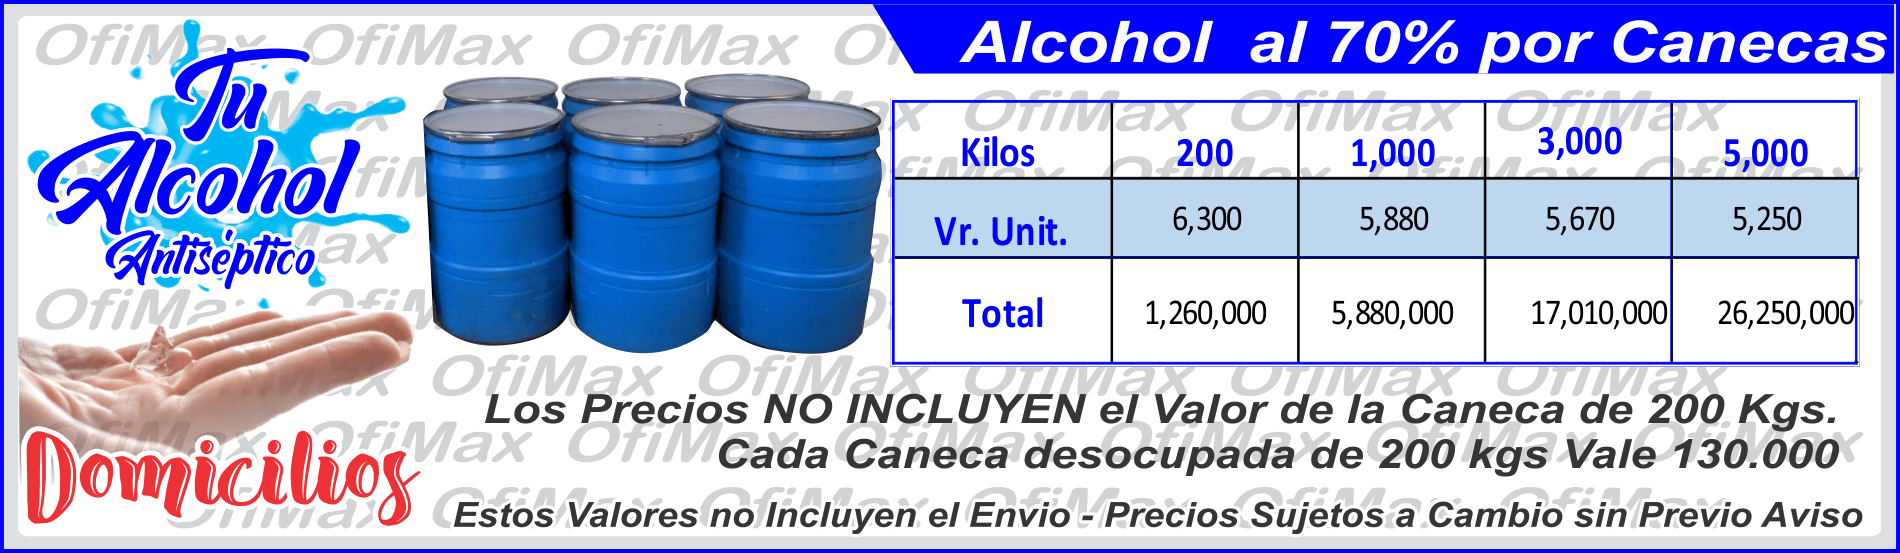 alcohol antiseptico por canecas, colombia